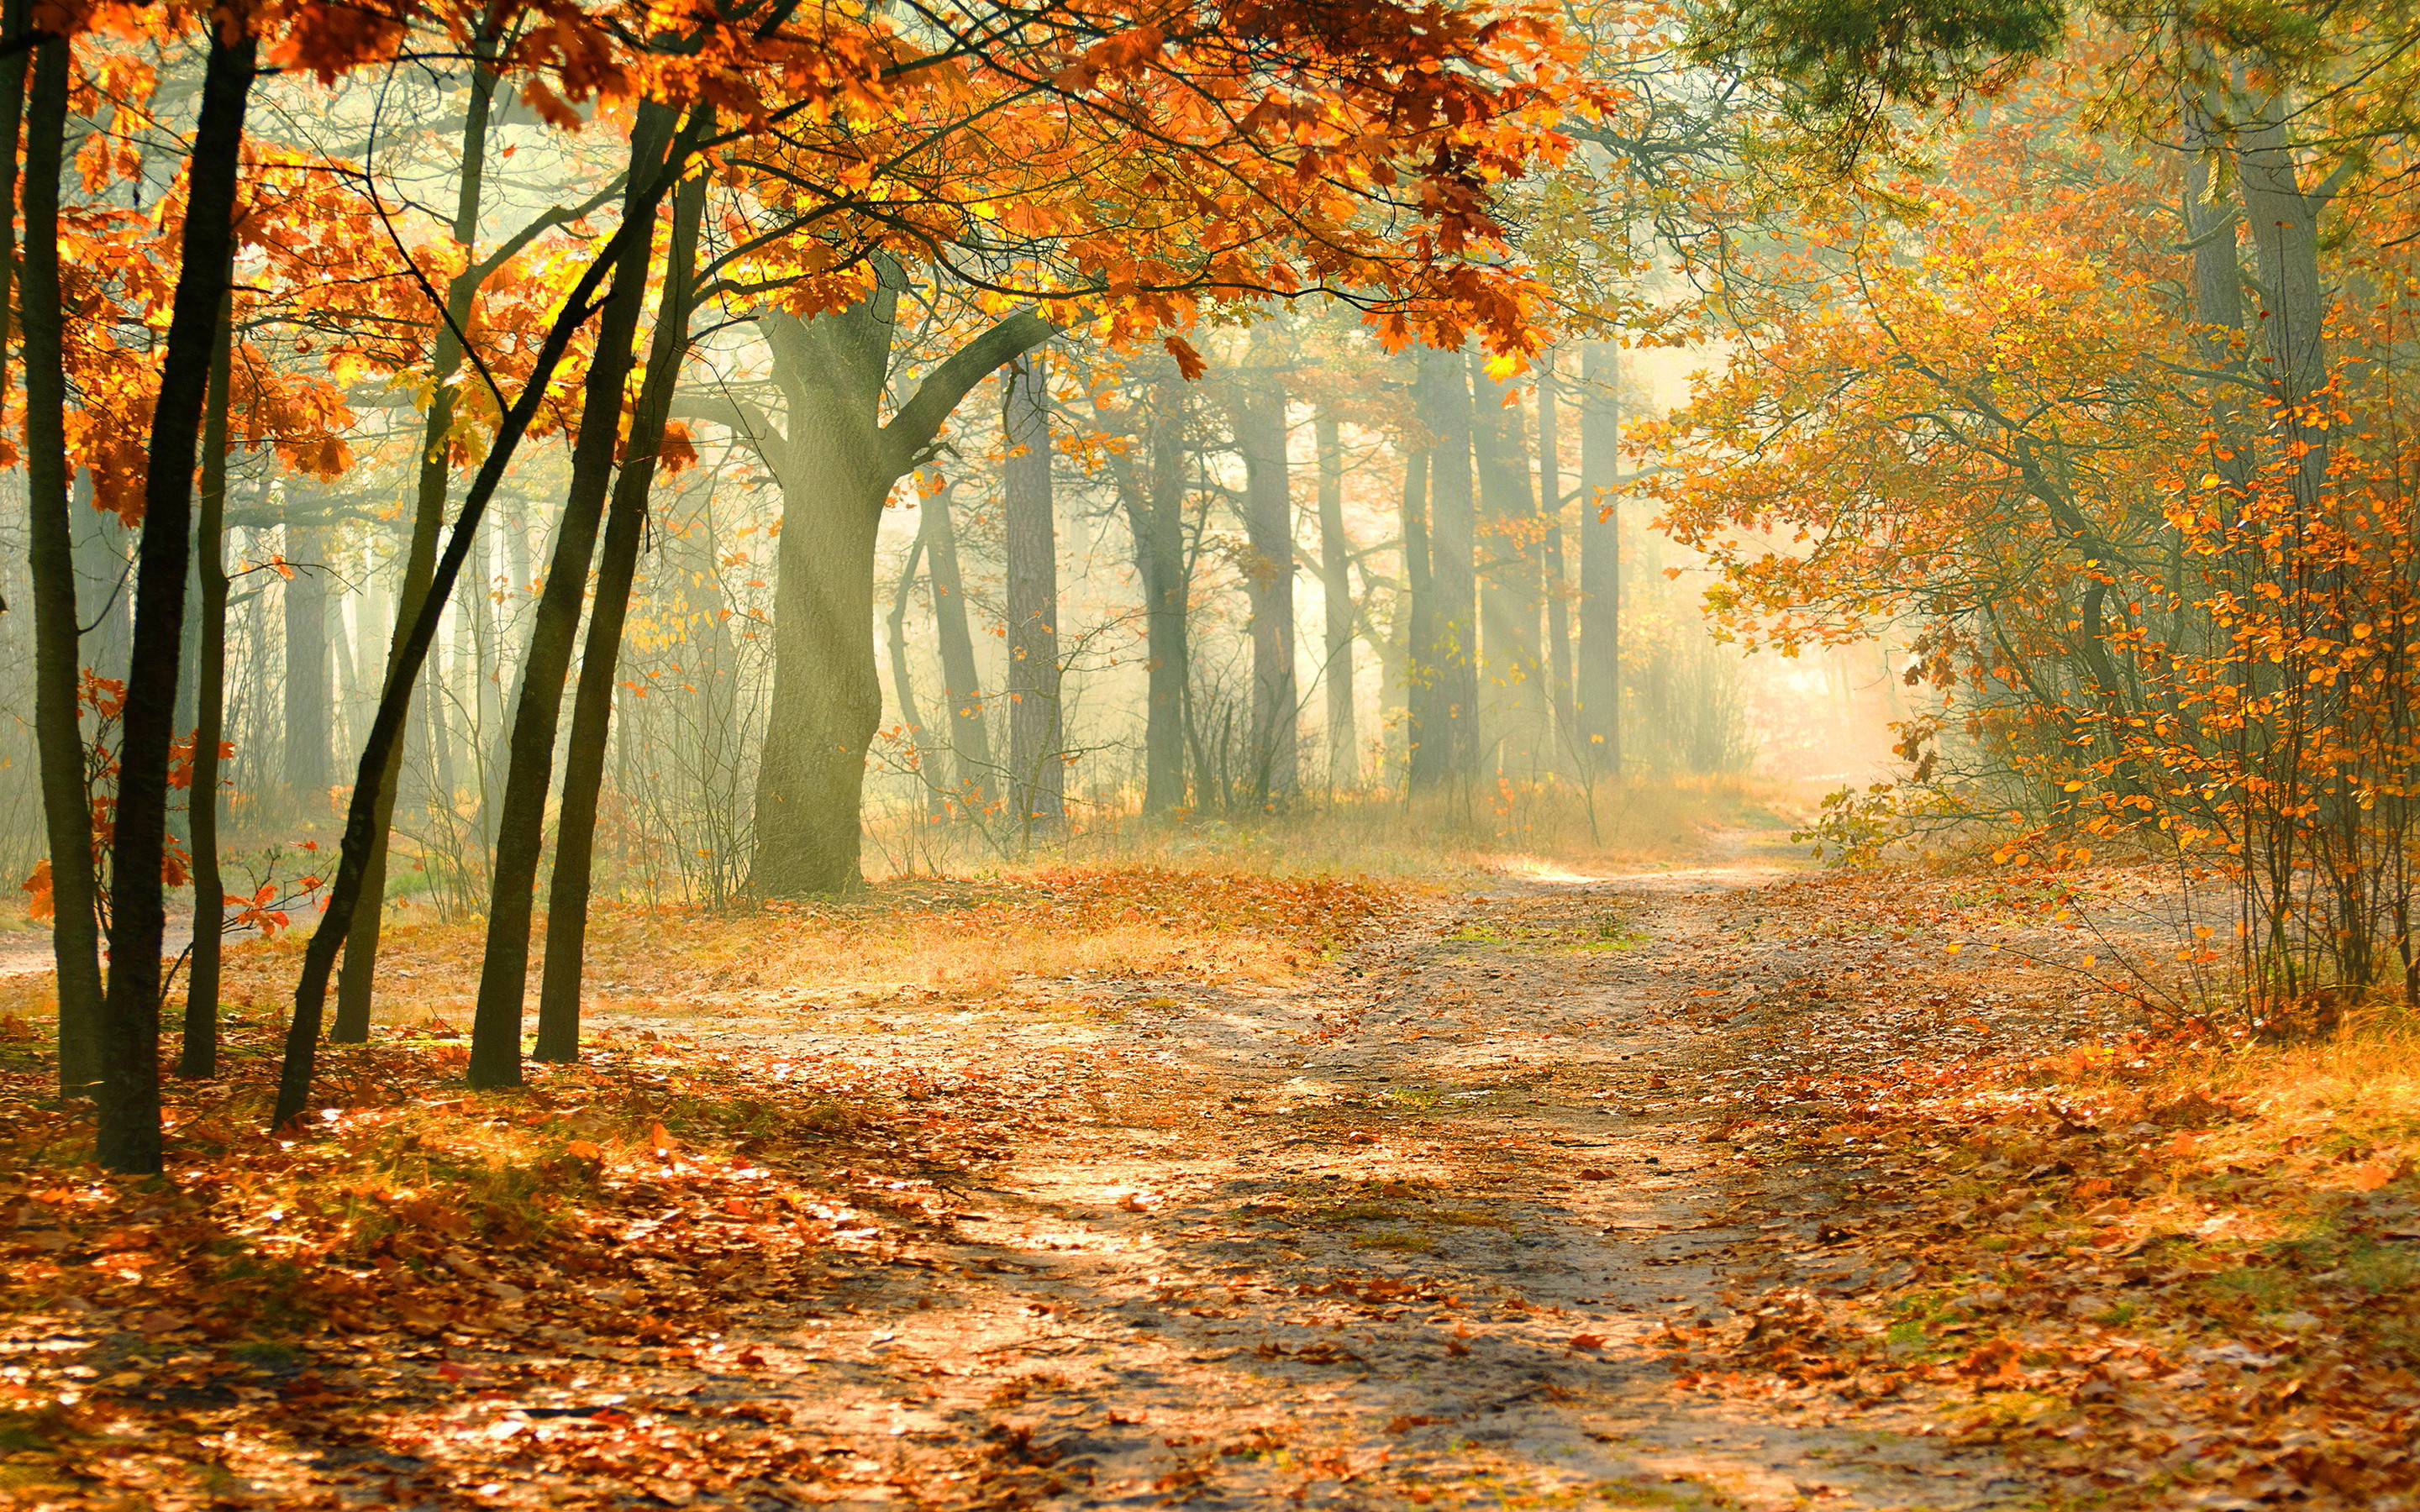 Скачать обои бесплатно Природа, Осень, Дорога, Лес, Дерево, Солнечный Луч, Земля/природа картинка на рабочий стол ПК